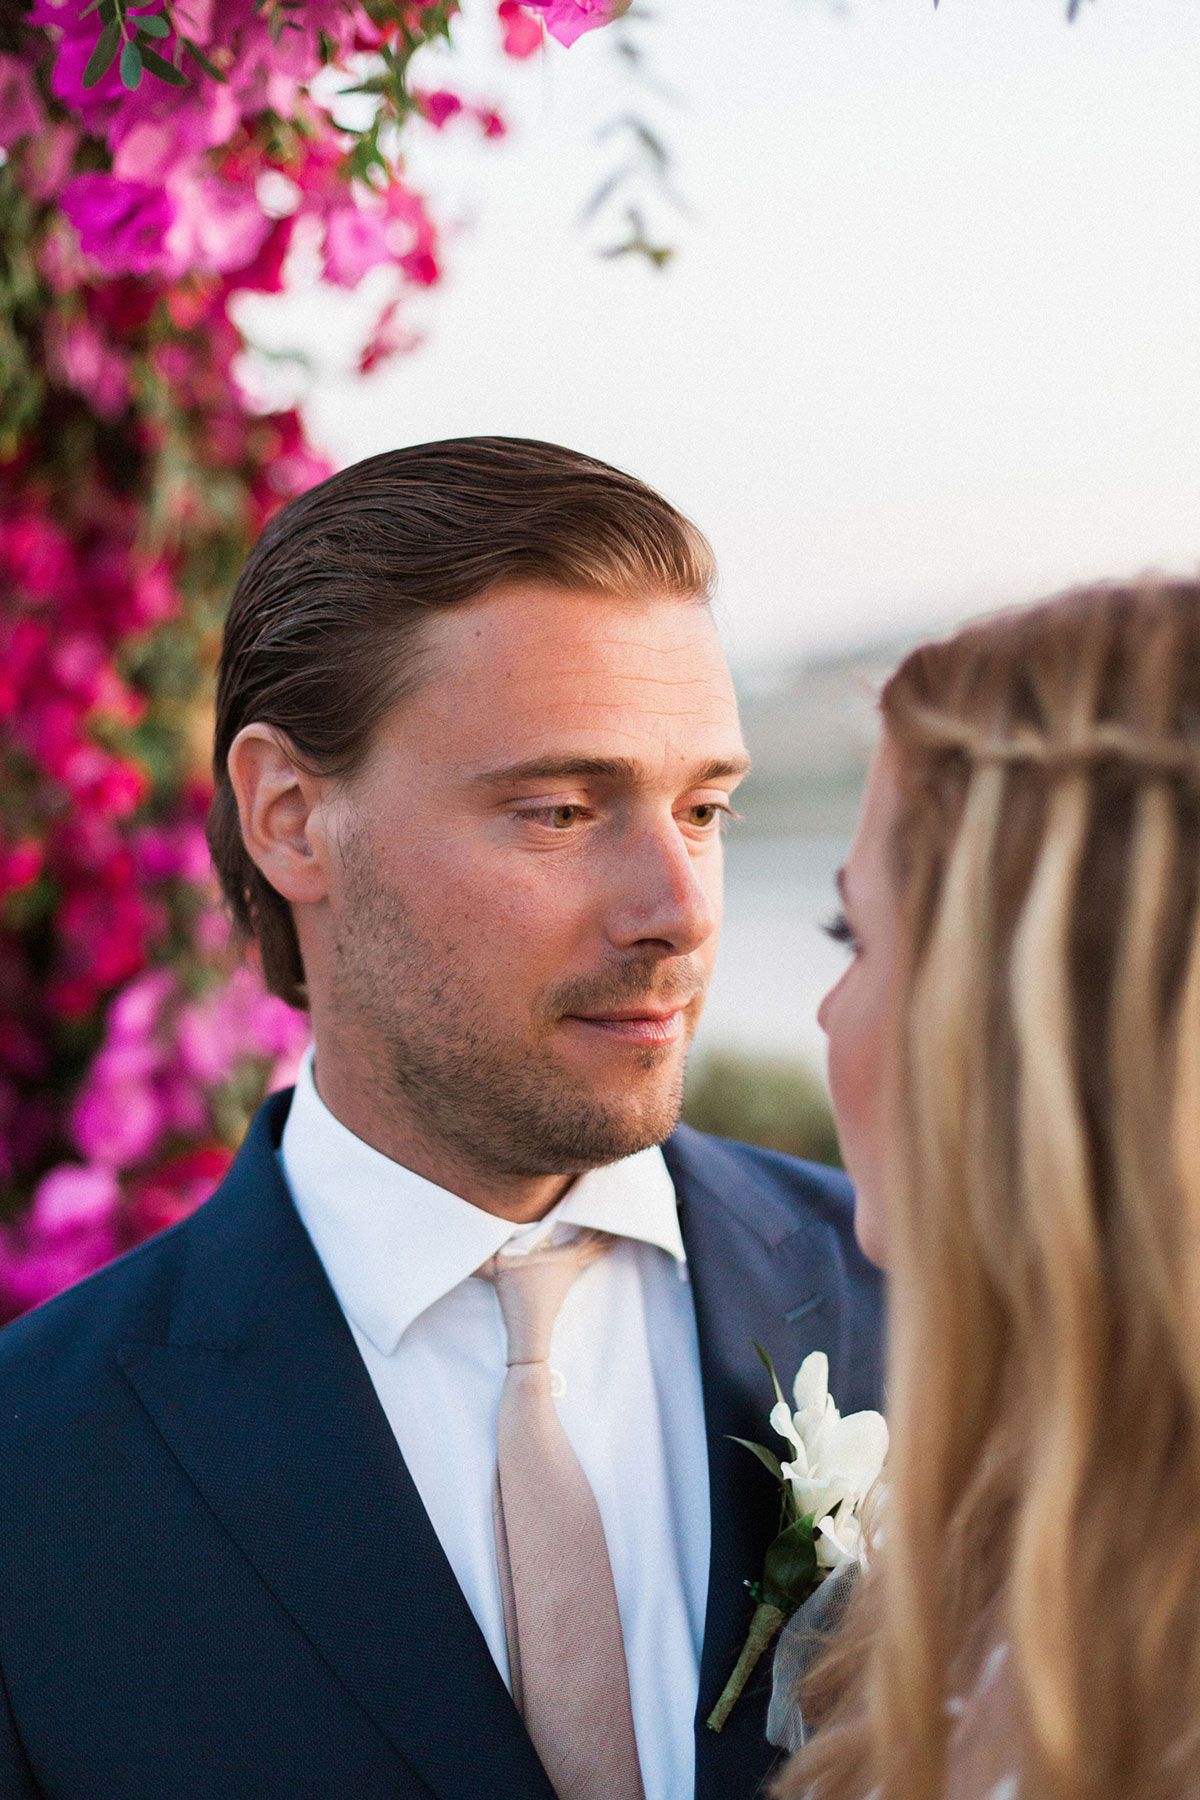 luxury weddings in greek island